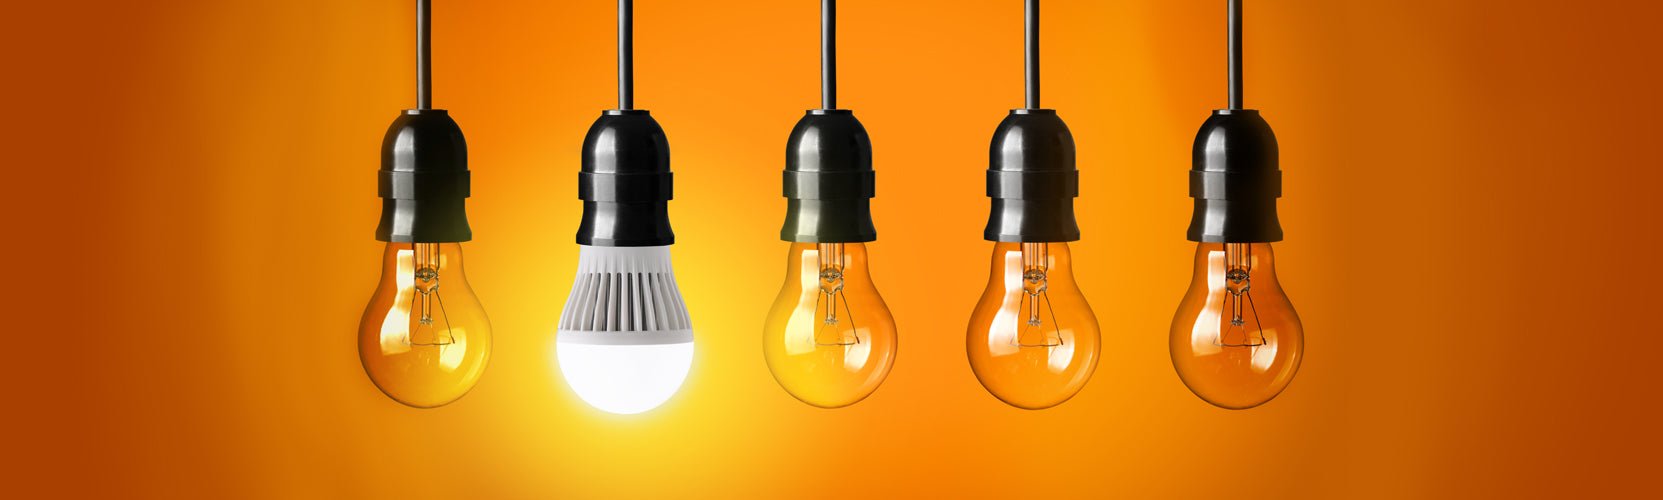 Do LEDs Use a Lot of Electricity?